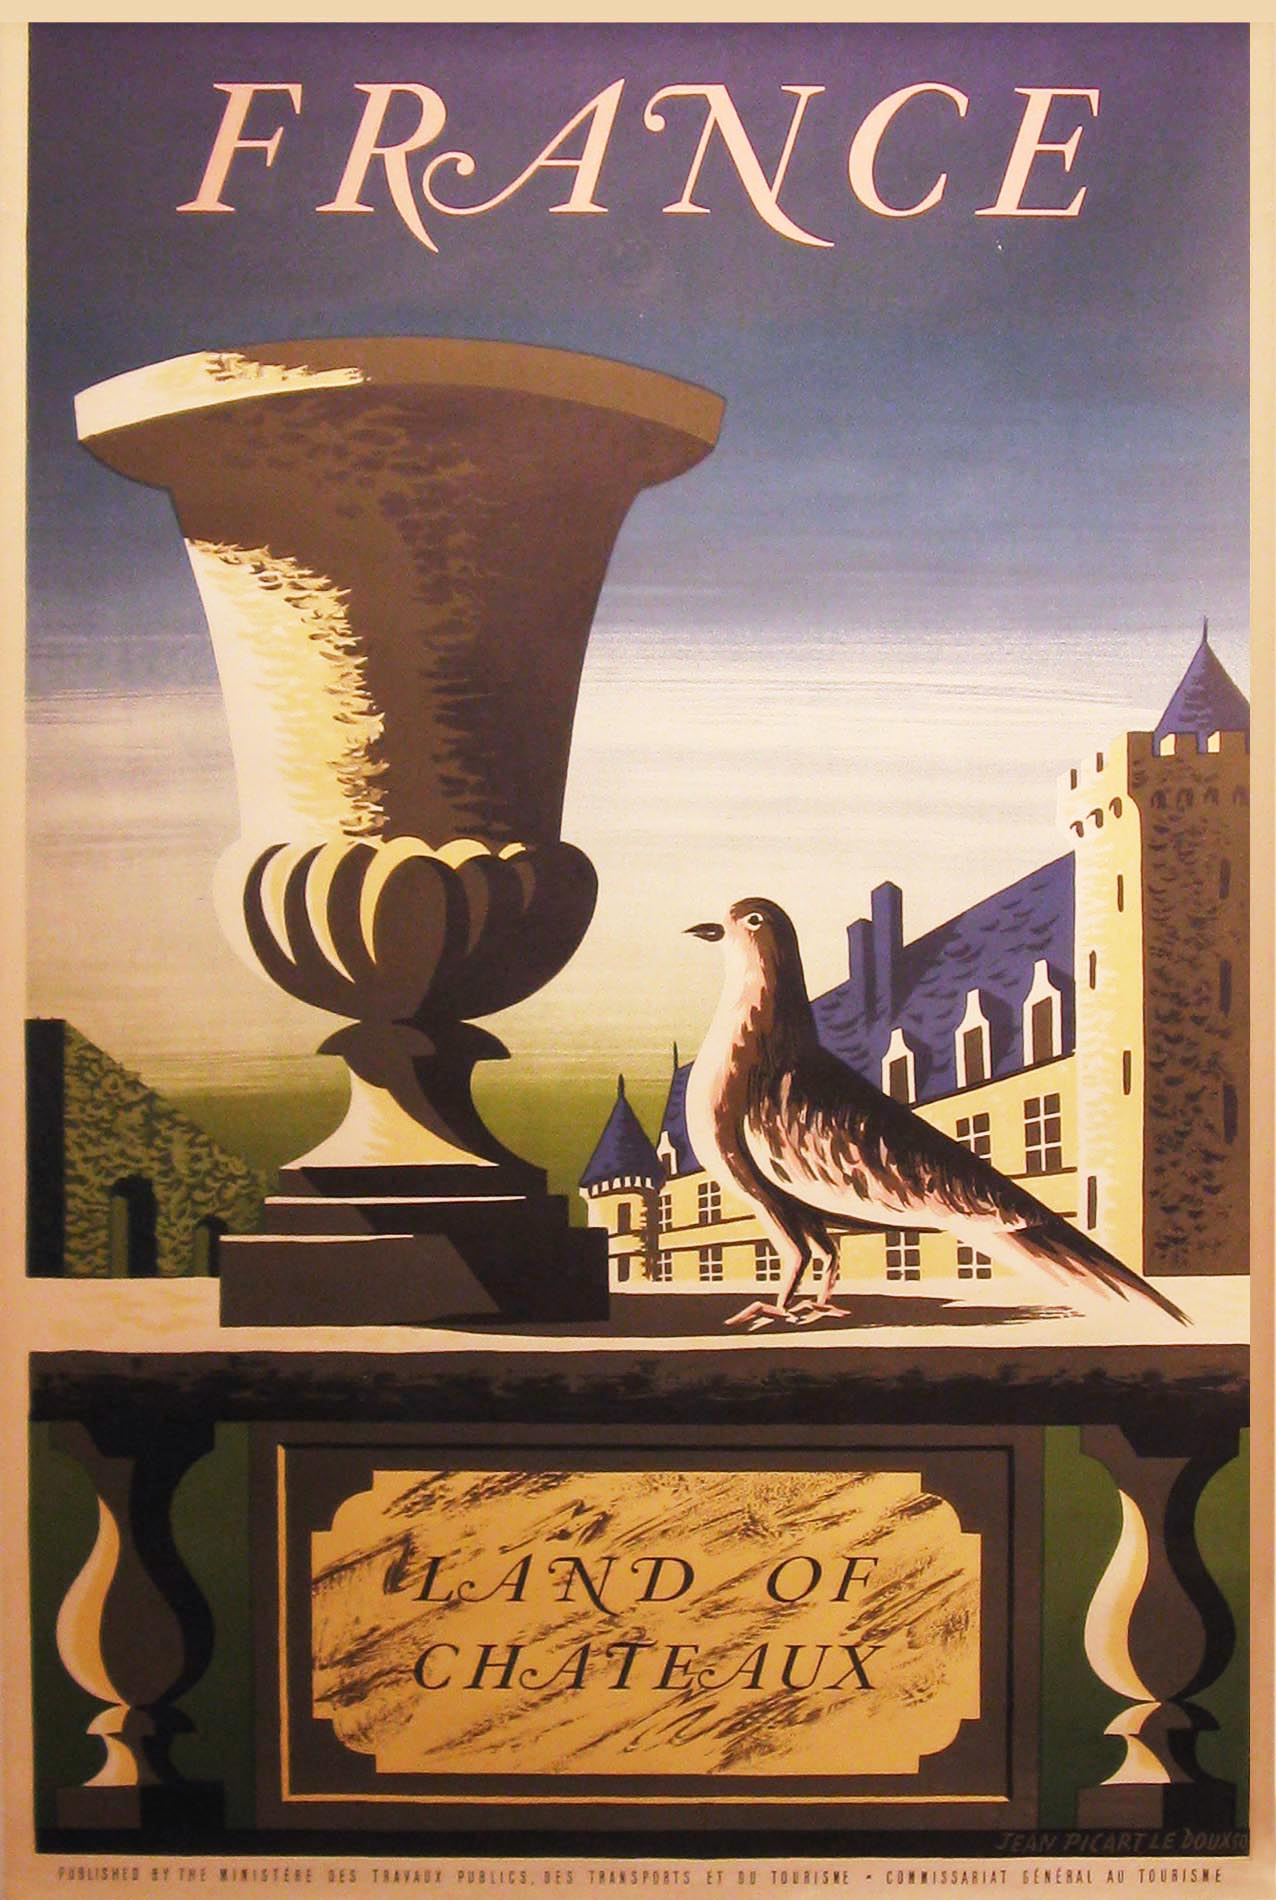 Chateaux - France c.1950 by Picart Le Doux, Jean, 1902-1982